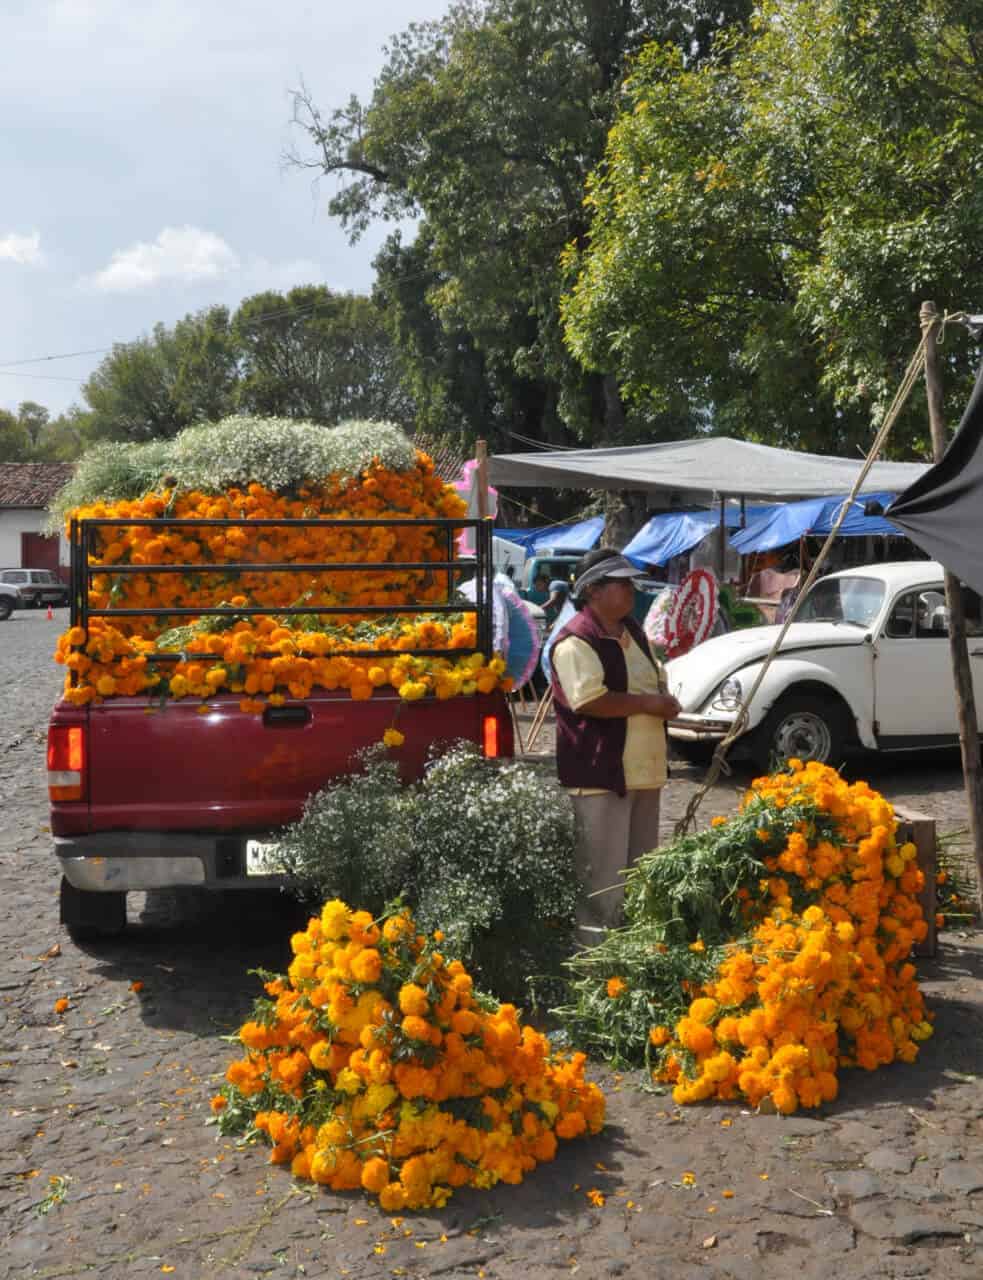 Cempasuchil vendor on Day of the Dead in Patzcuaro.